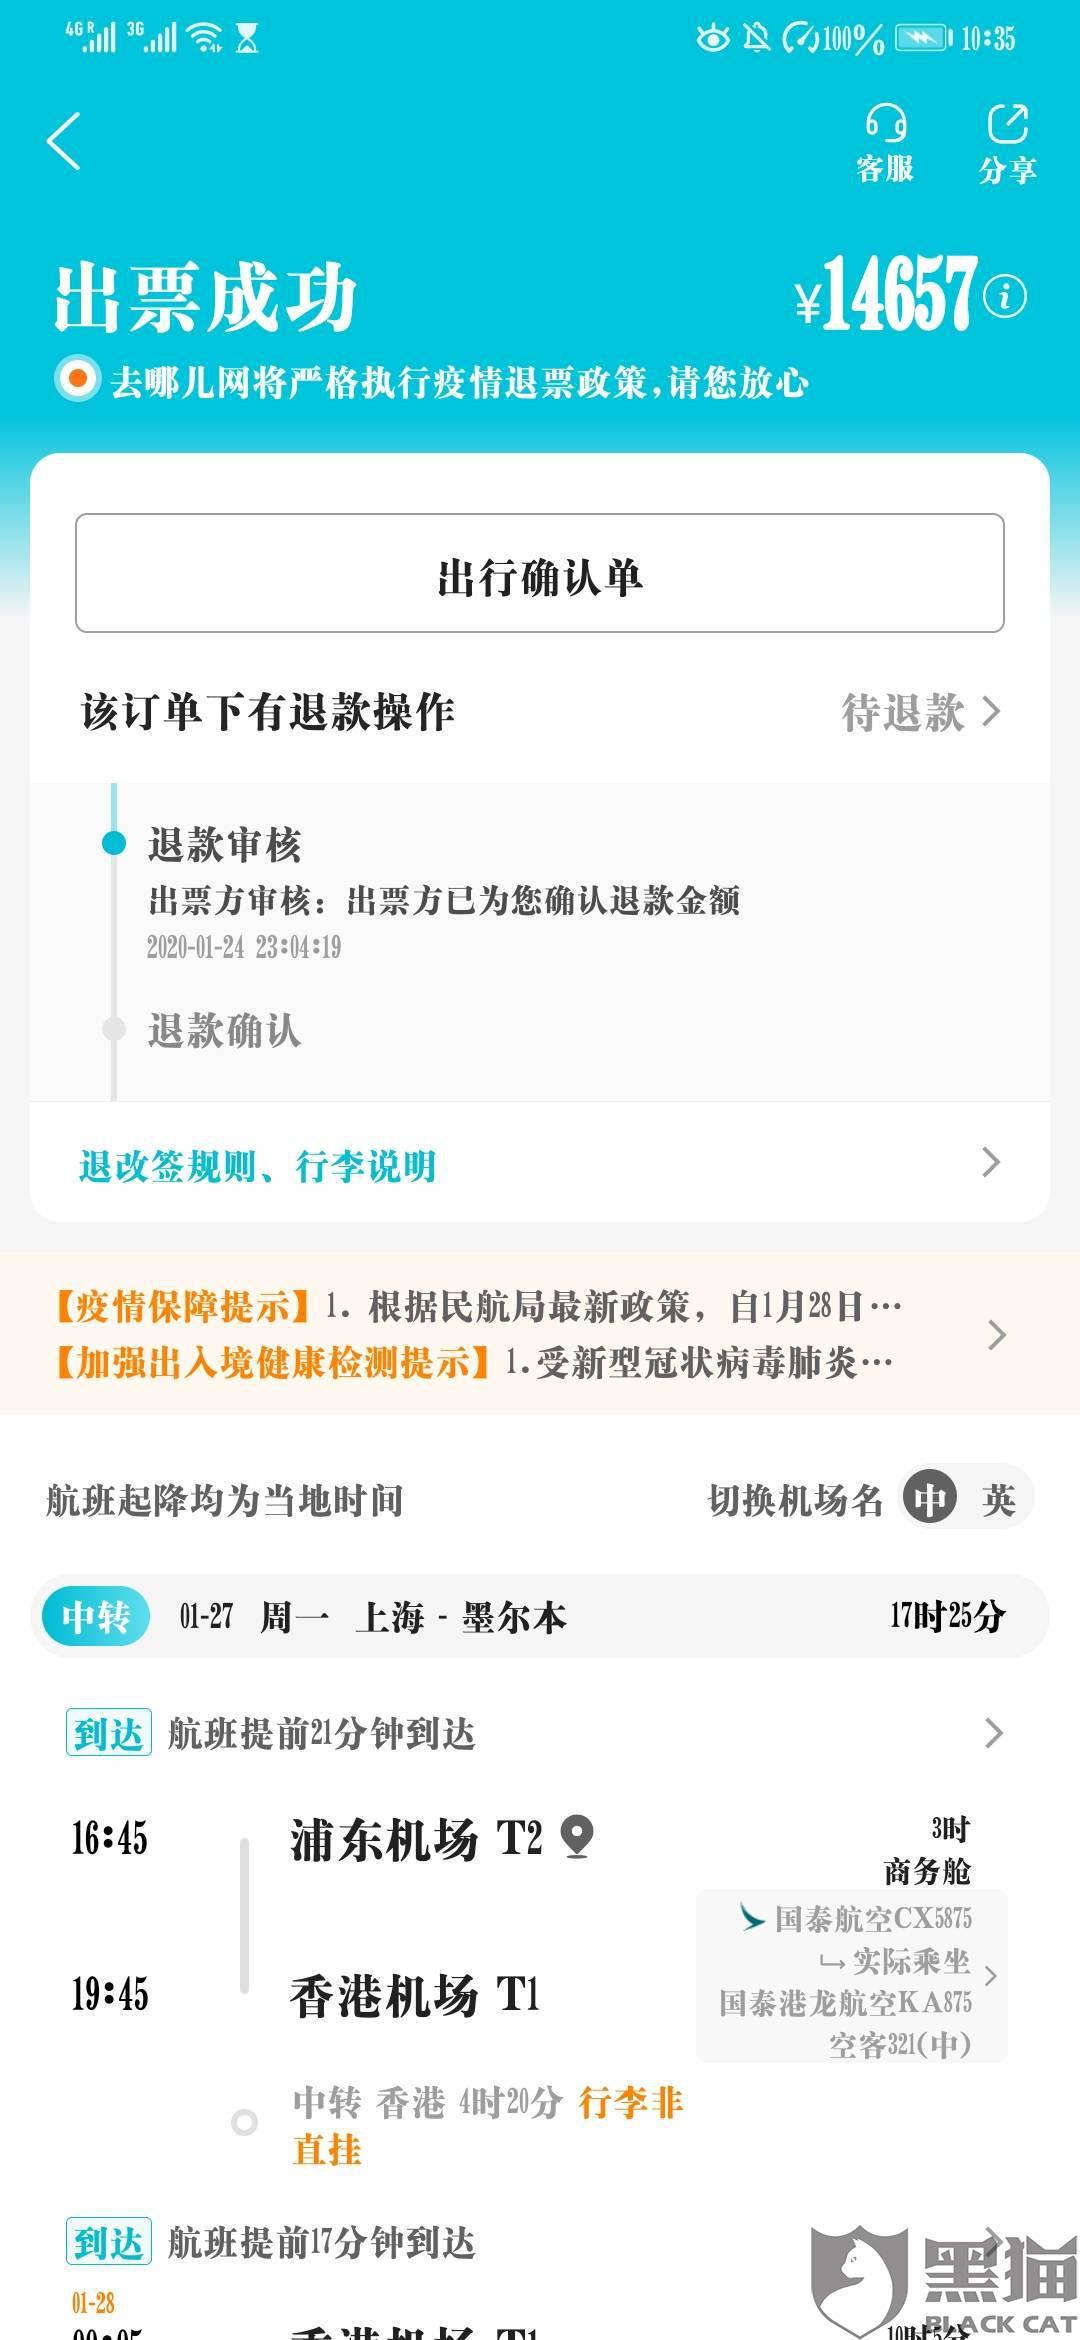 黑猫投诉:在去哪儿网购买从上海到墨尔本单程机票,起飞前退票后不按